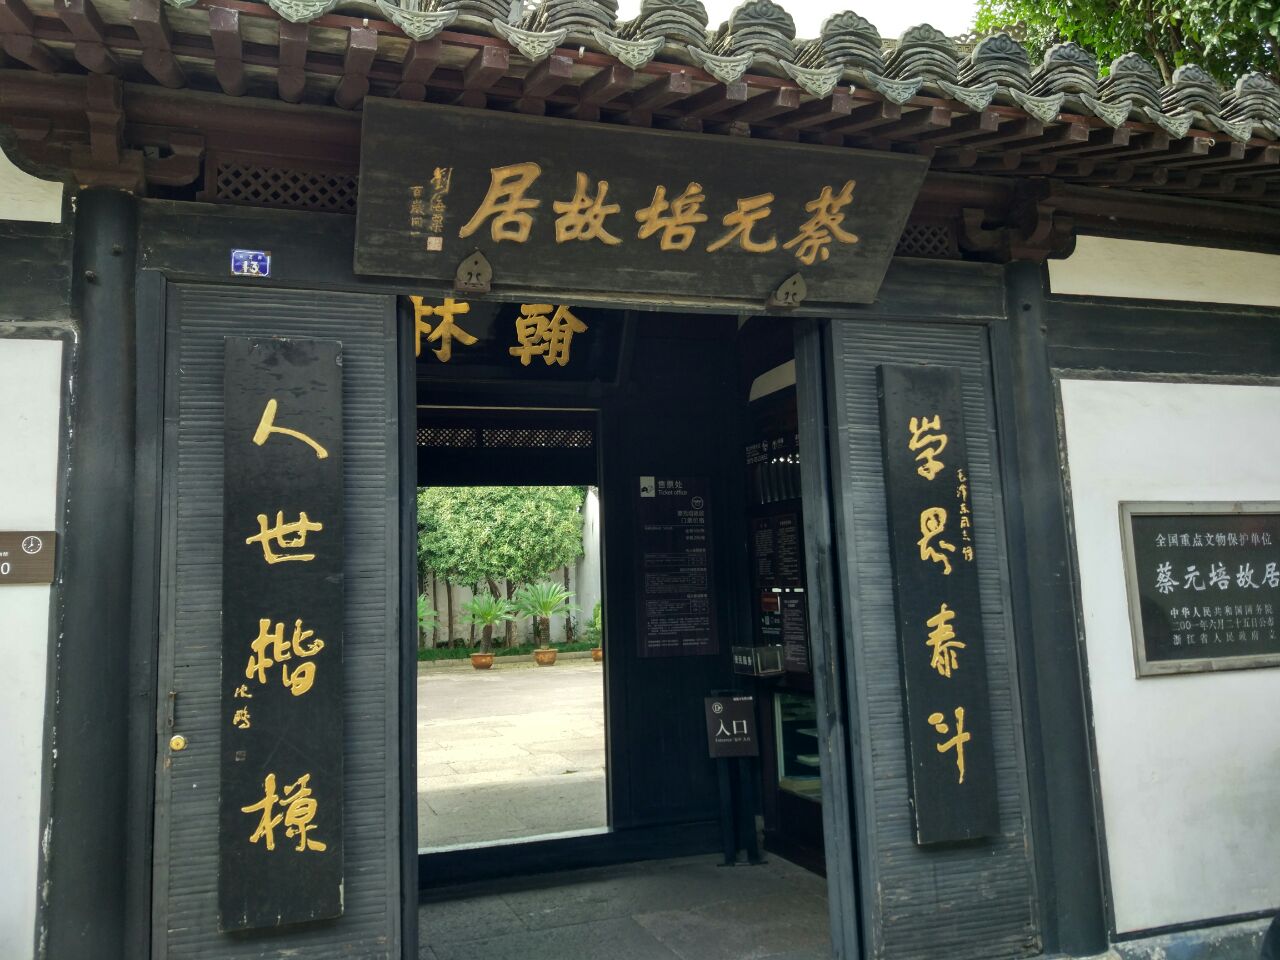 蔡元培故居位于绍兴市区萧山街笔飞弄13号是一个颇具绍兴特色的明清台